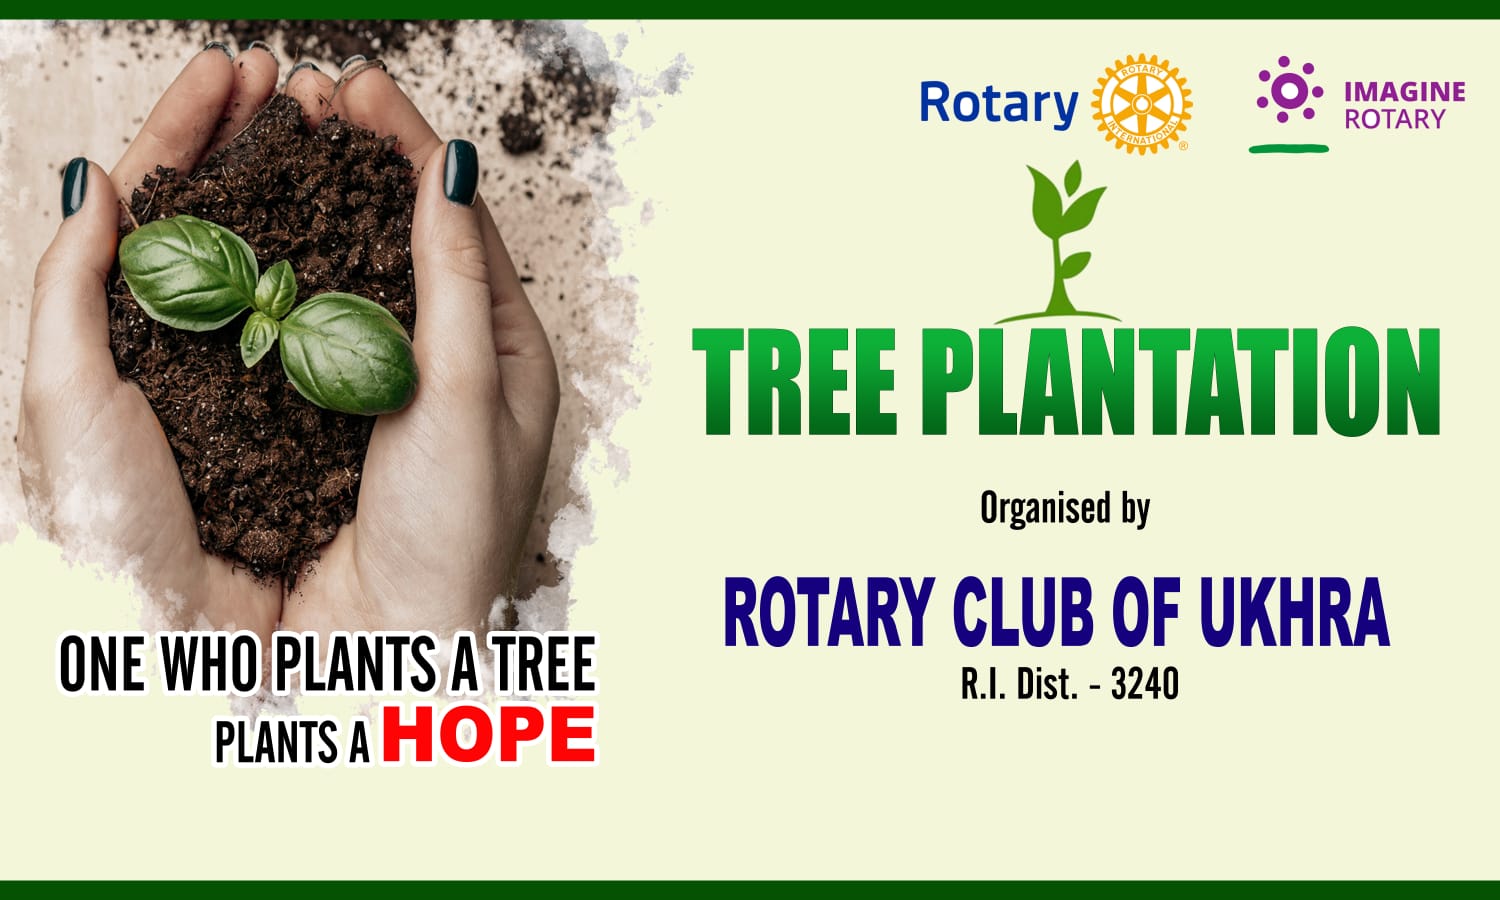 One who plants a Tree plants a Hope